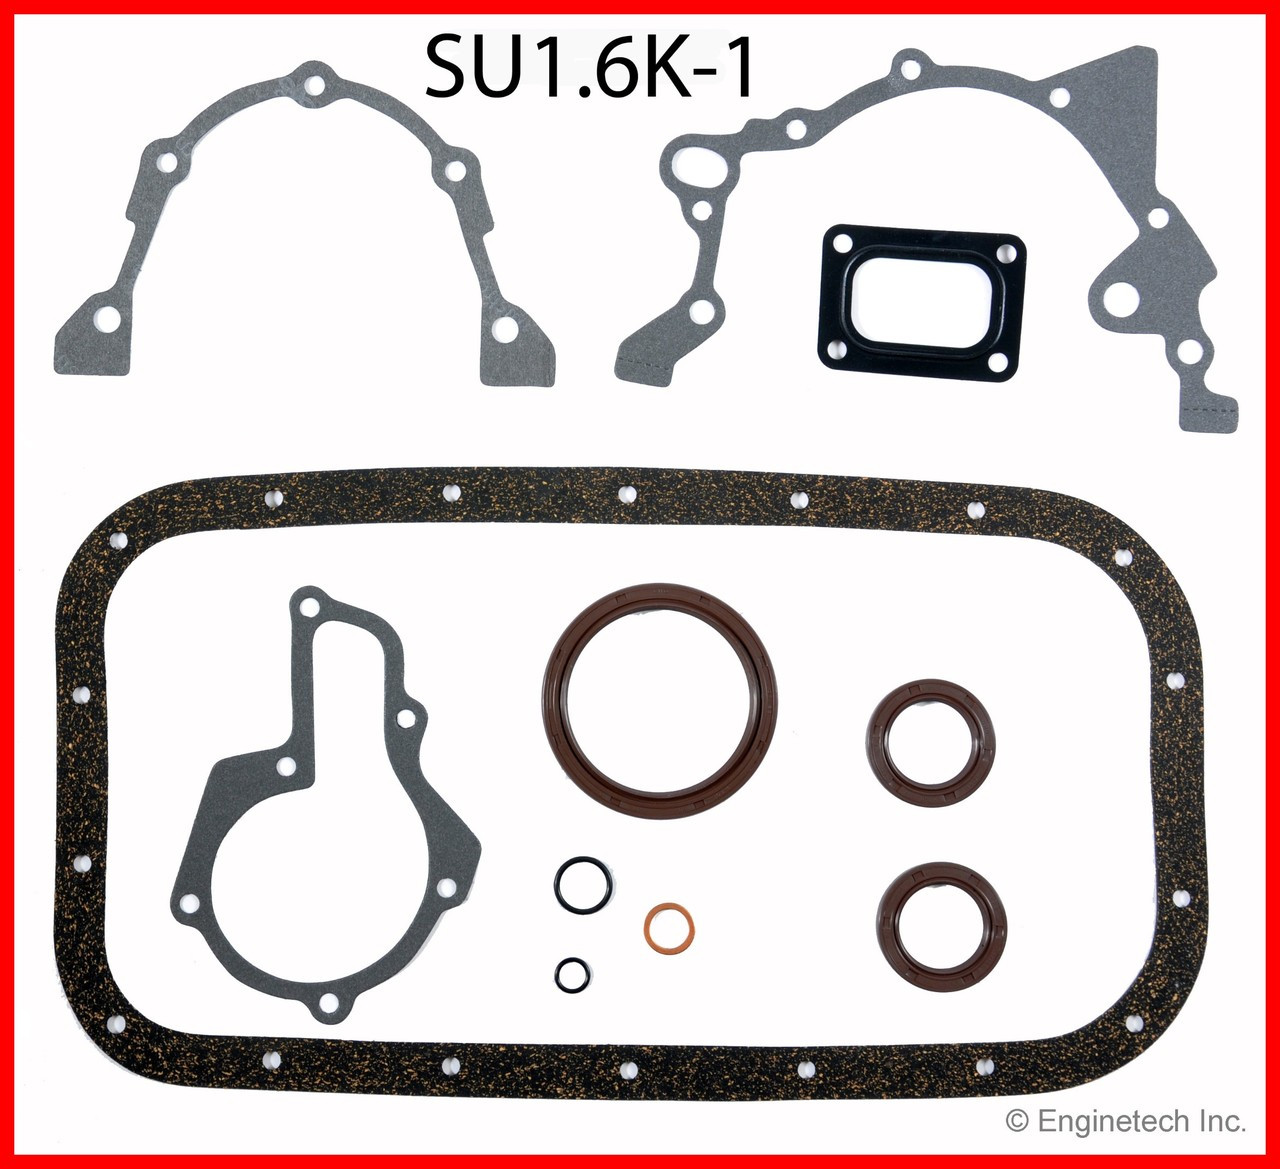 1994 Suzuki Sidekick 1.6L Engine Gasket Set SU1.6K-1 -13